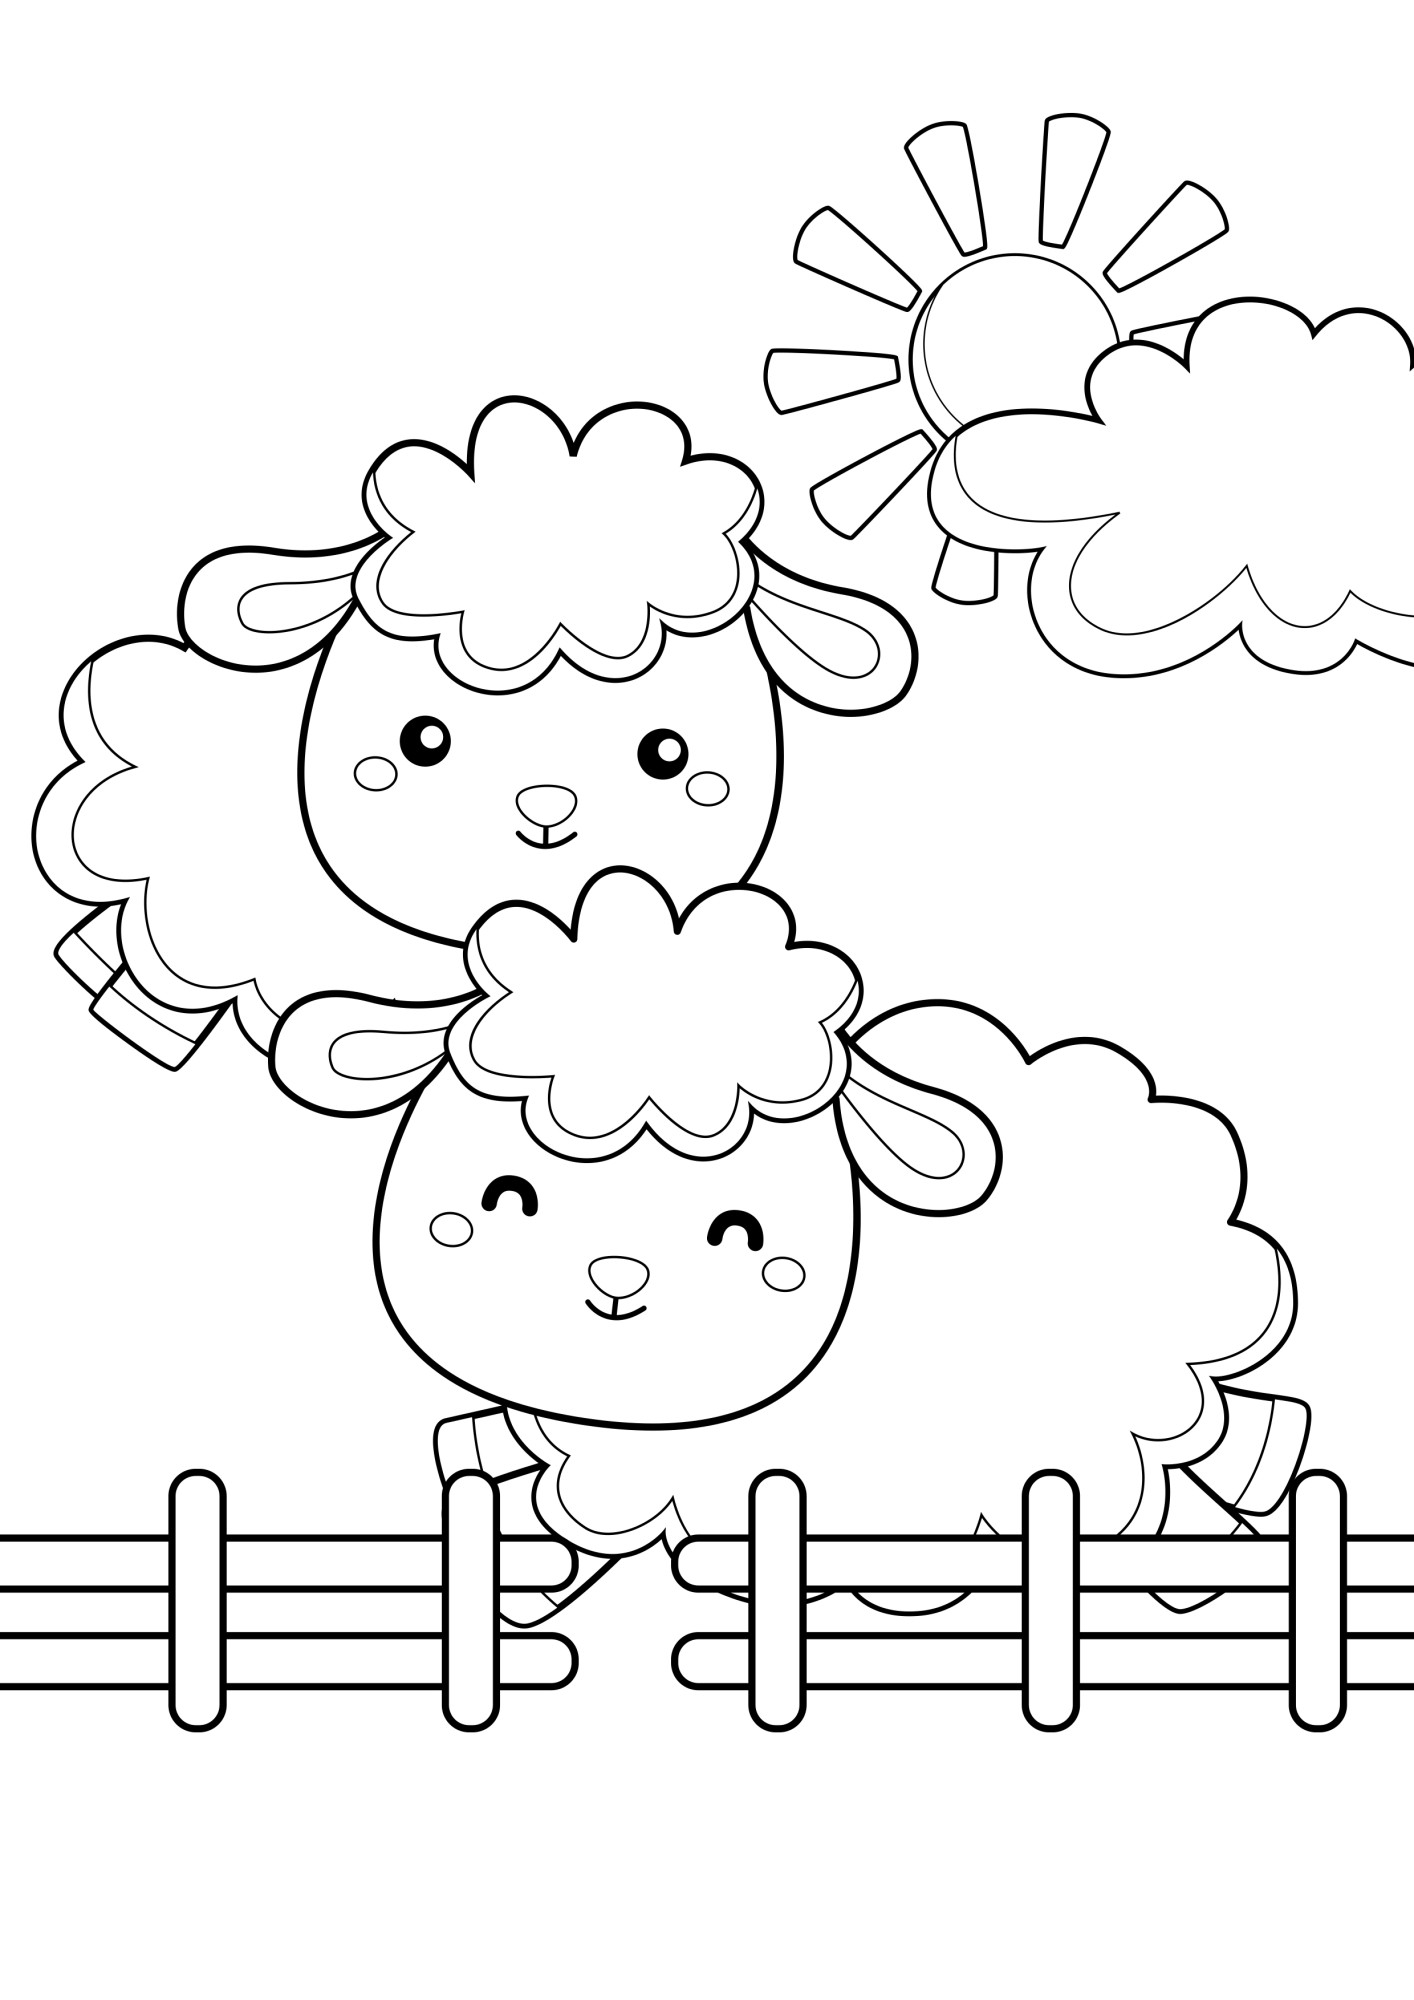 Раскраска для детей: две овечки на ферме бегают у забора